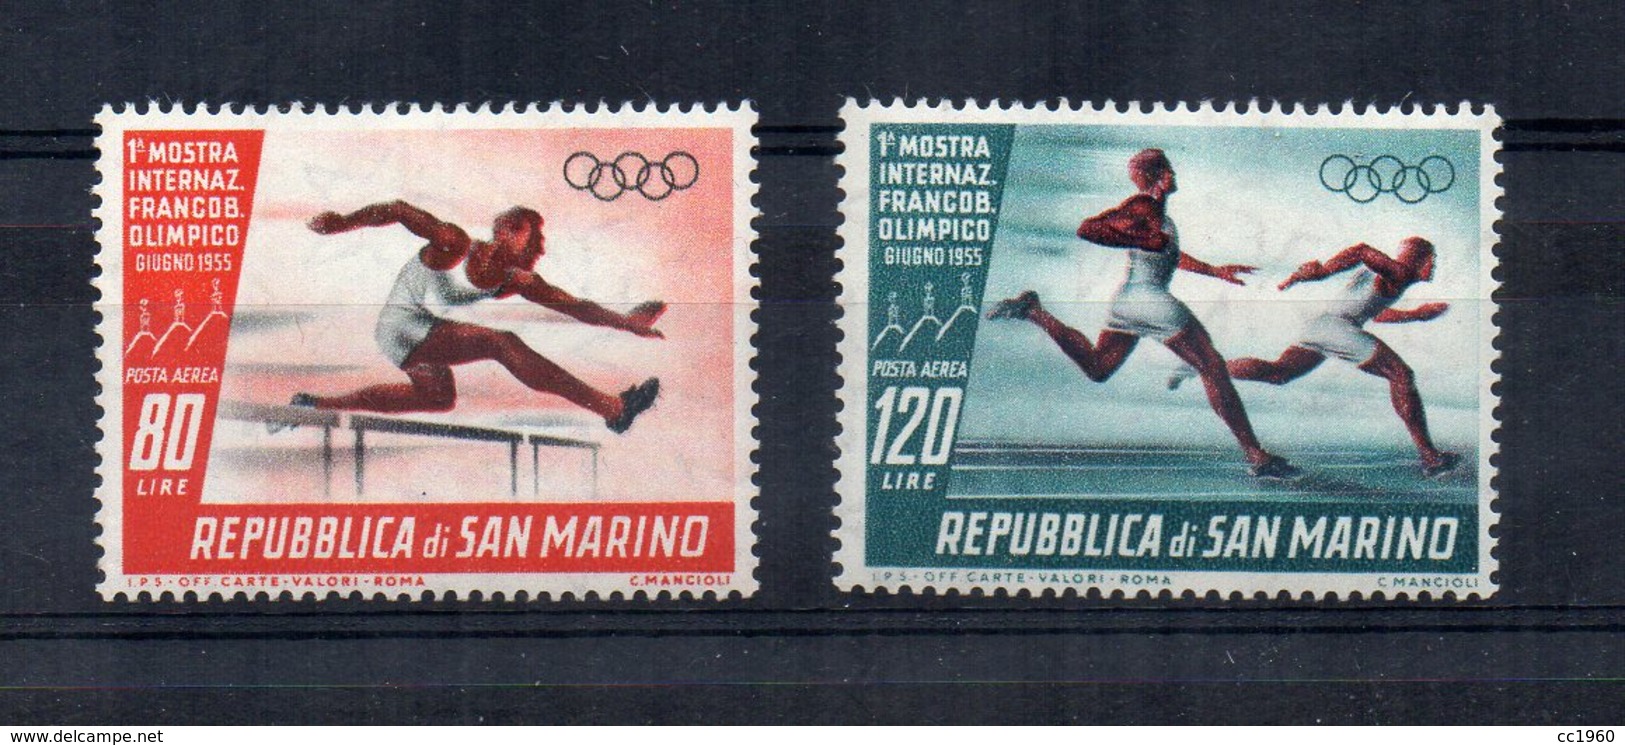 San Marino - 1955 - 1^ Mostra Internazionale Del Francobollo Olimpico - Posta Aerea - 2 Valori - Nuovi - (FDC14278) - Nuovi